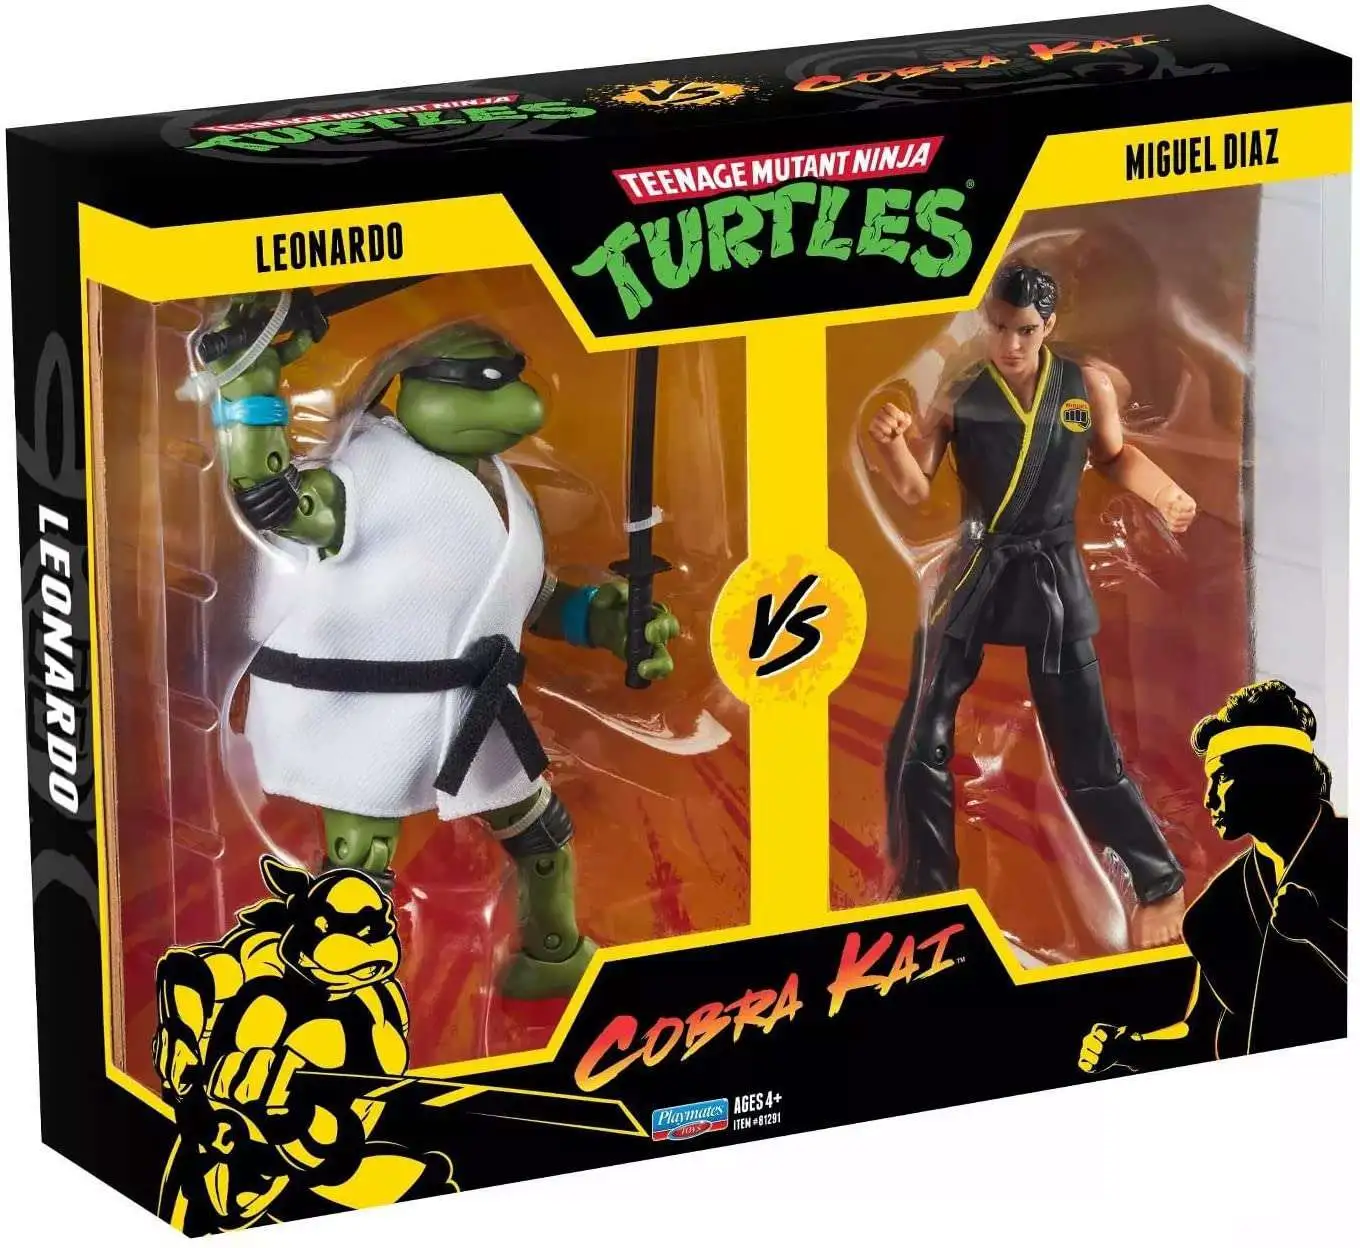 Cobra Kai Leo vs Miguel Diaz 2 Pack Teenage Mutant Ninja Turtles vs 